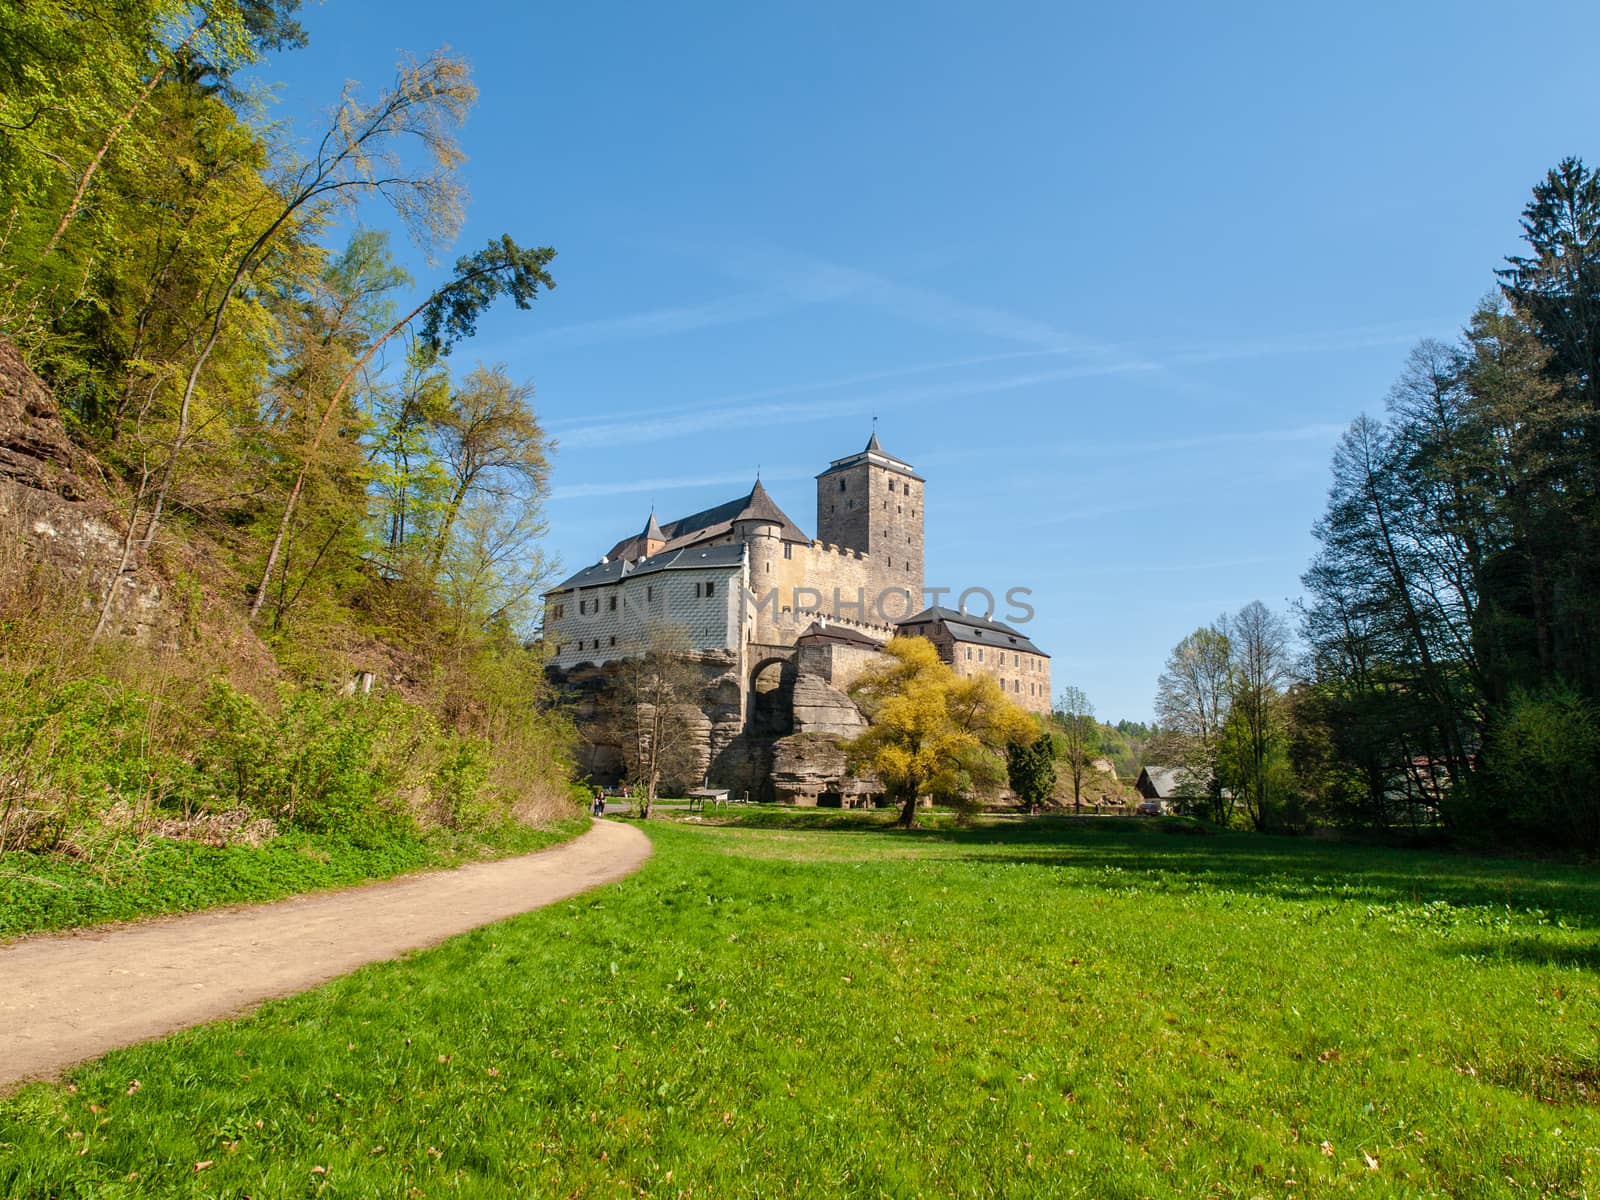 Kost Castle in Bohemian Paradise, Czech Republic by pyty